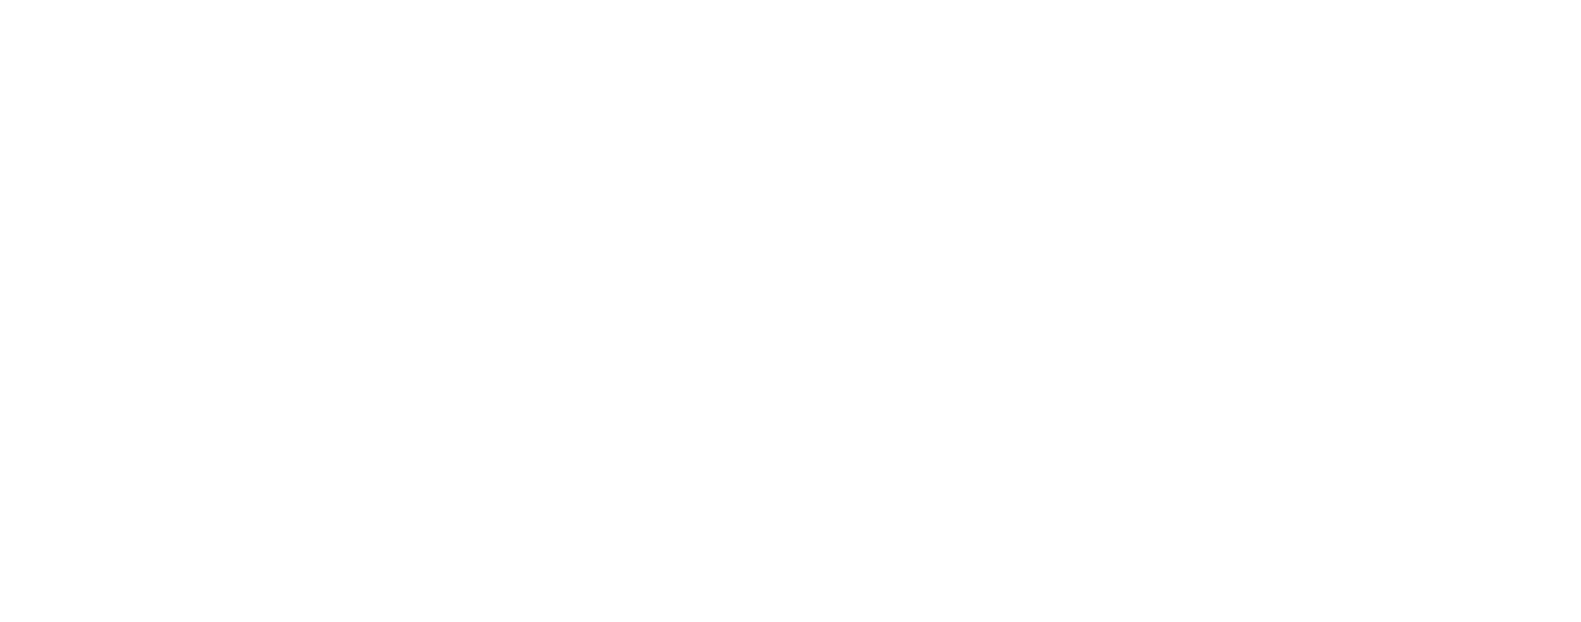 FuRyu logo large for dark backgrounds (transparent PNG)